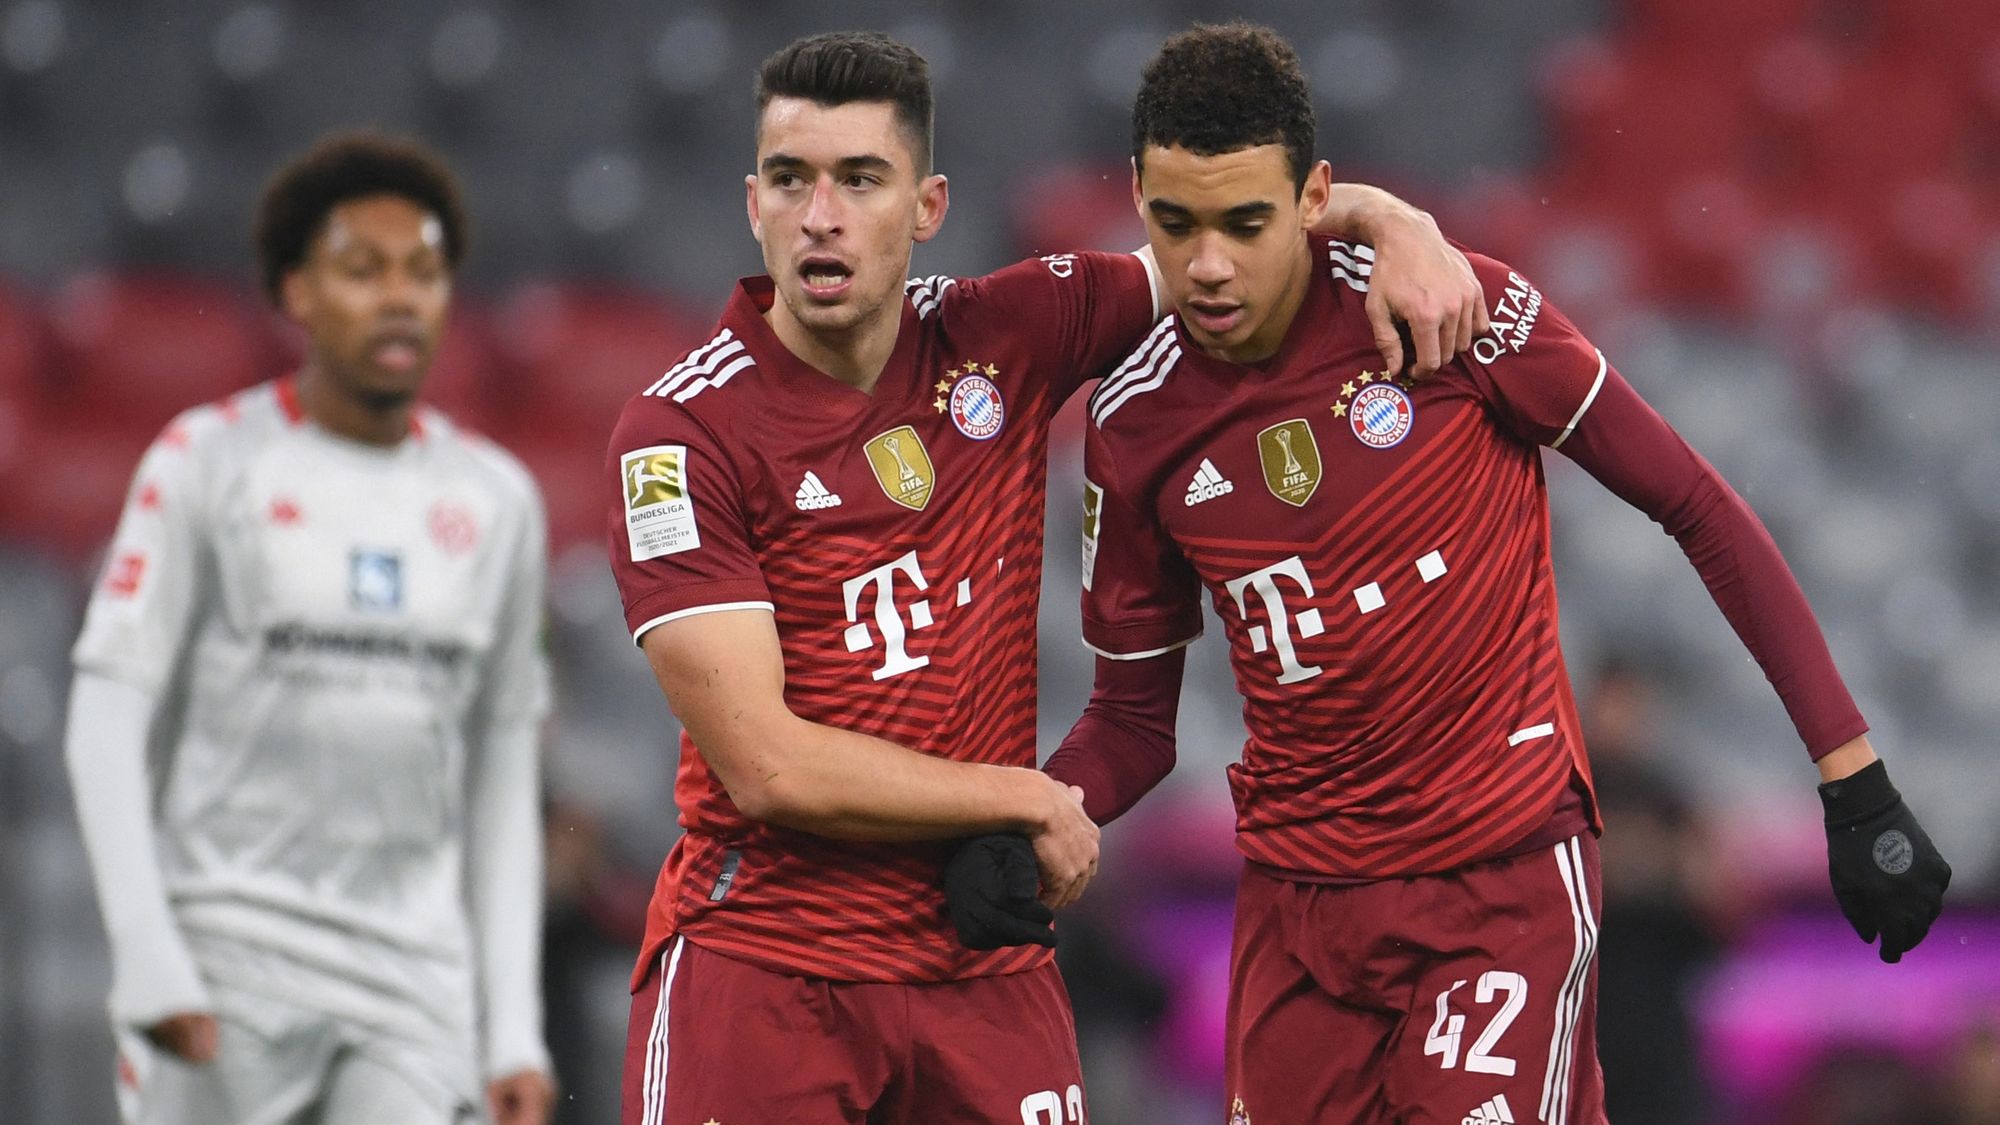 Bayern Munich remontó a Mainz y agrandó la ventaja en la Bundesliga